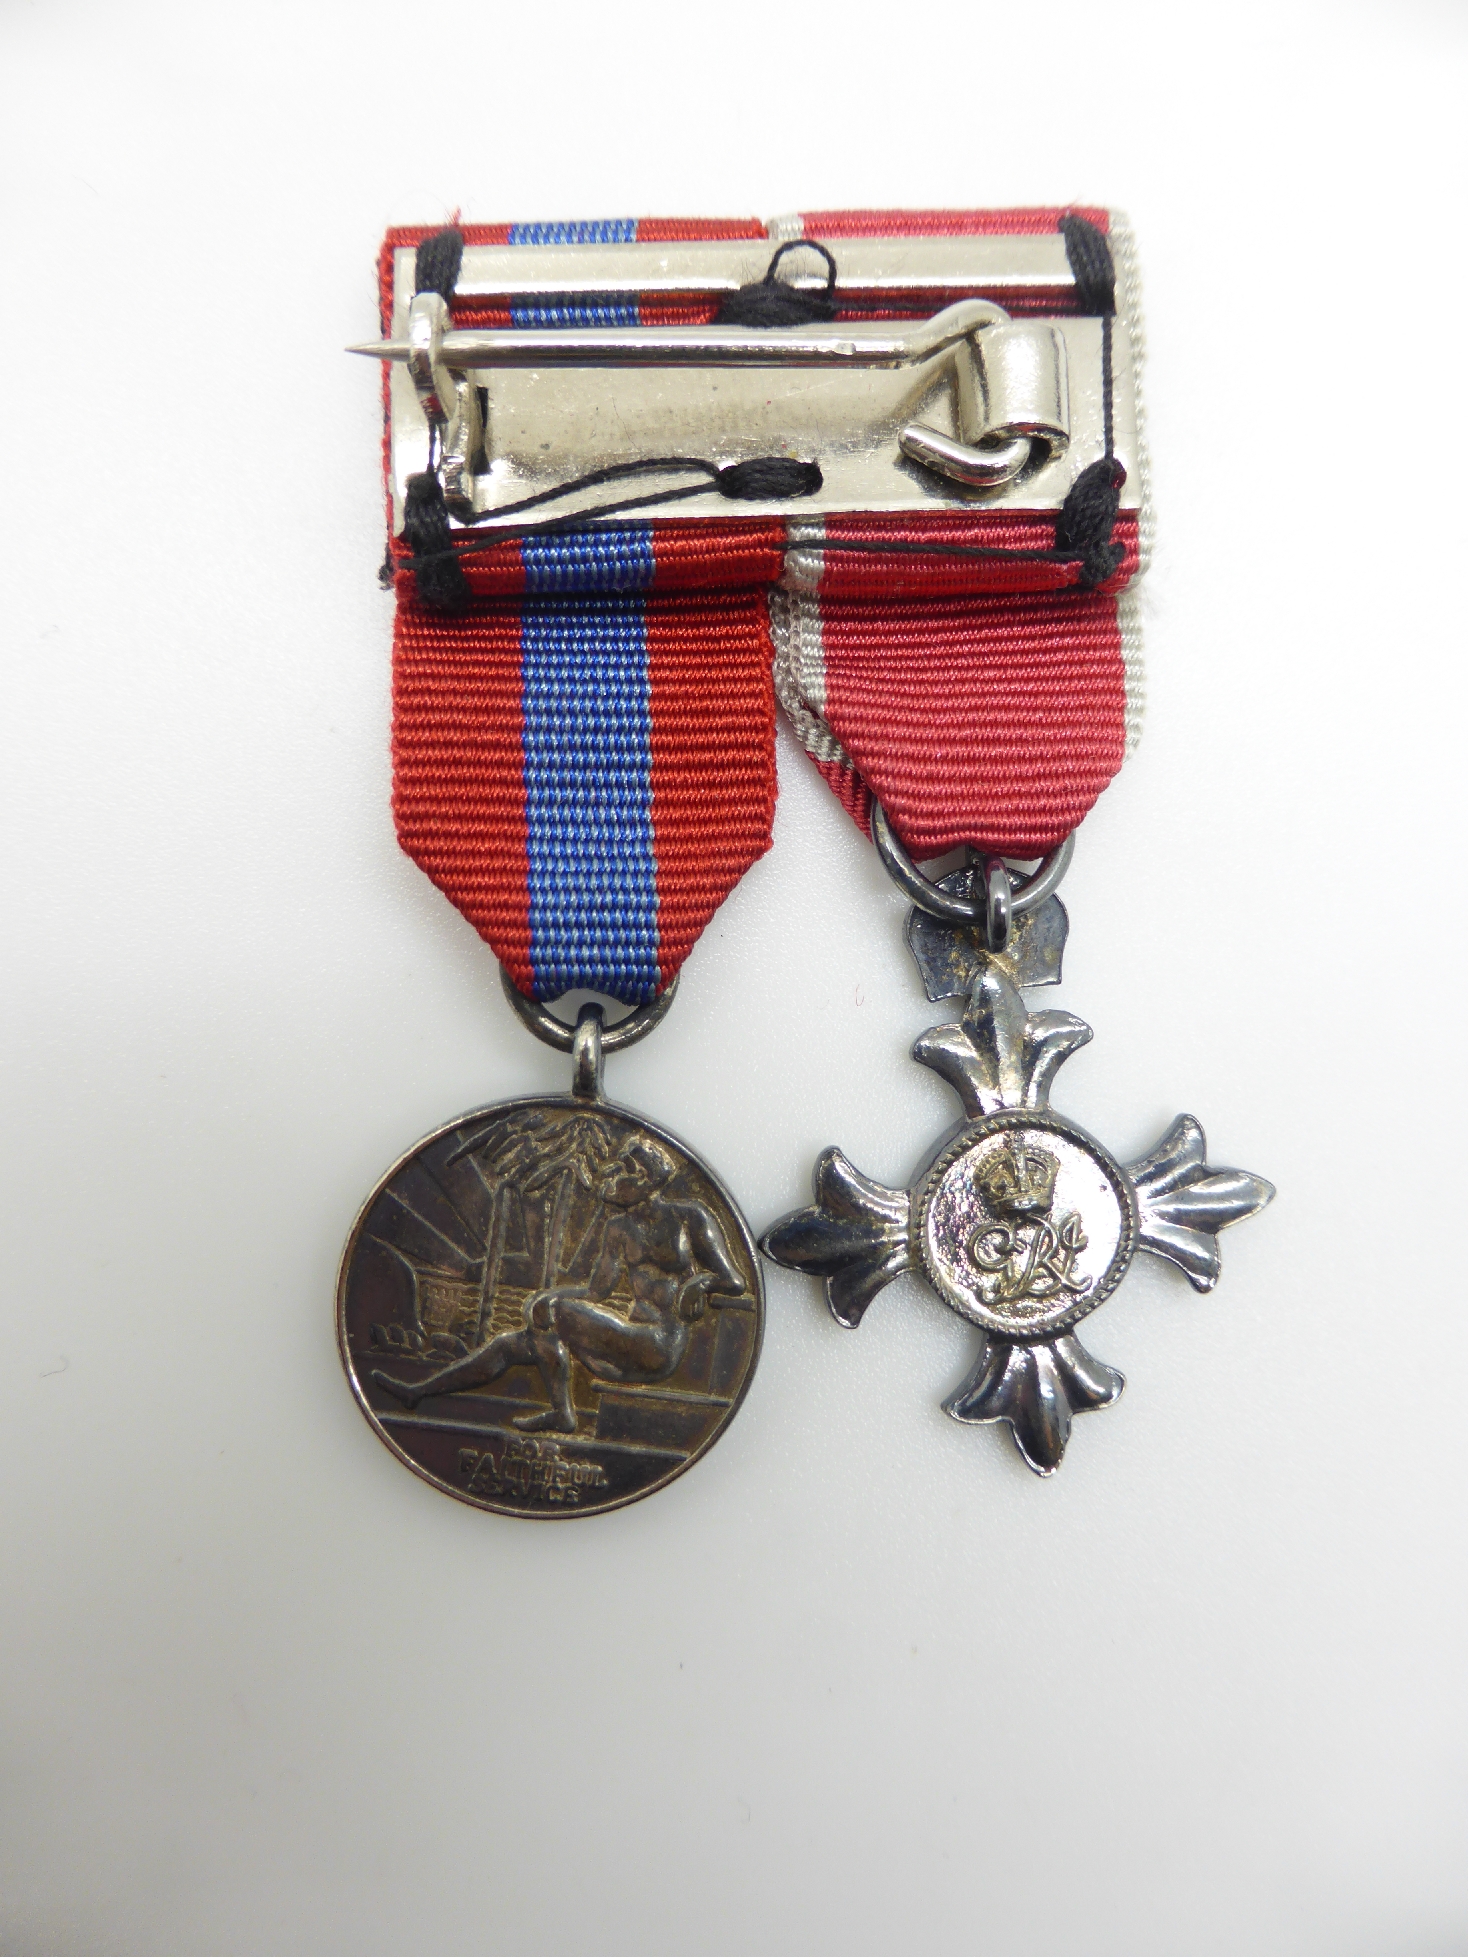 Elizabeth II Imperial Service Medal named to Mrs Jean Margaret Rose together with a WWII War Medal - Image 34 of 47